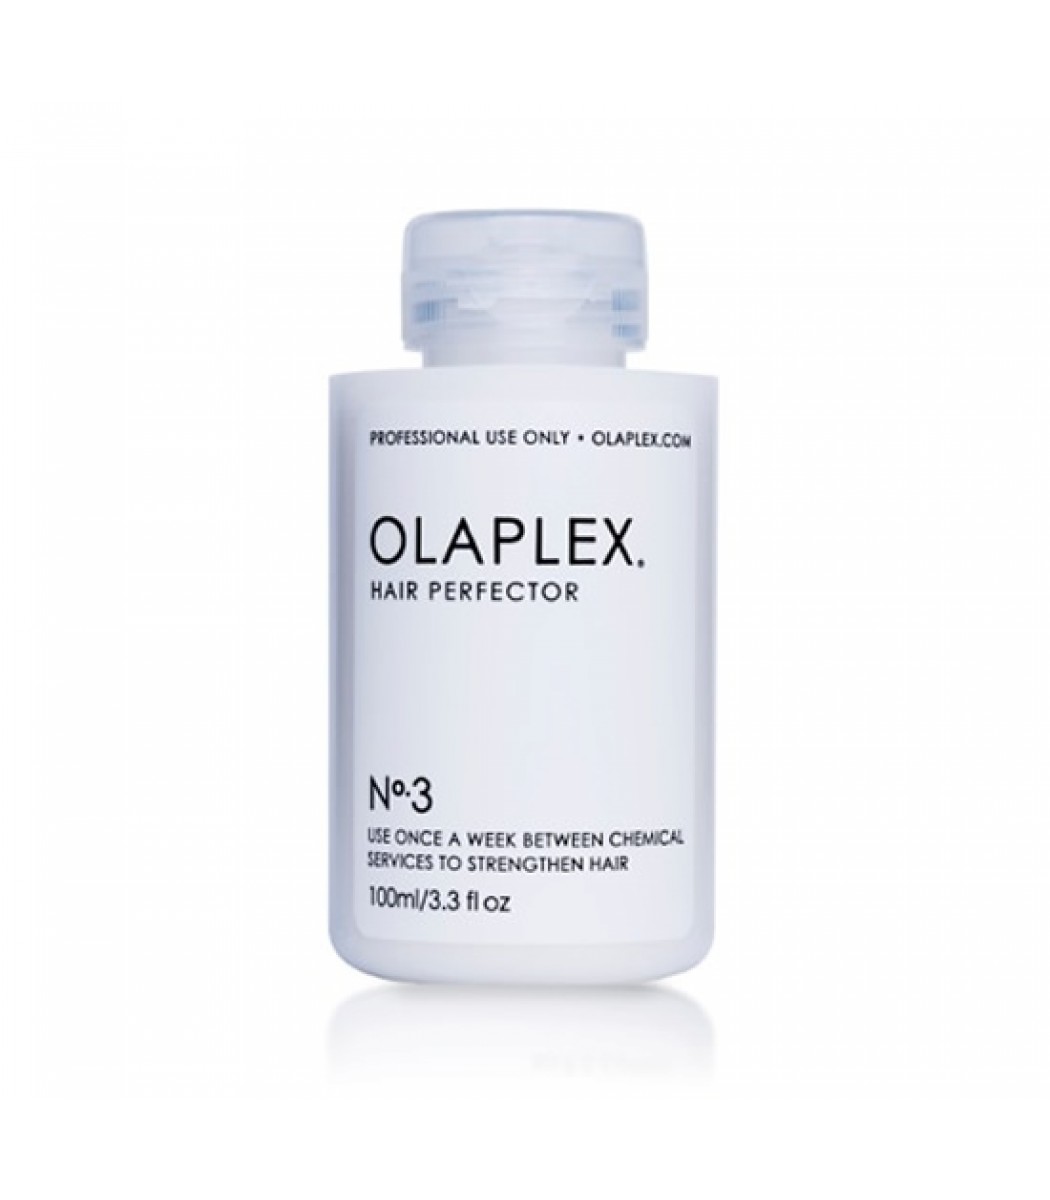 Olaplex No. 3 Hair